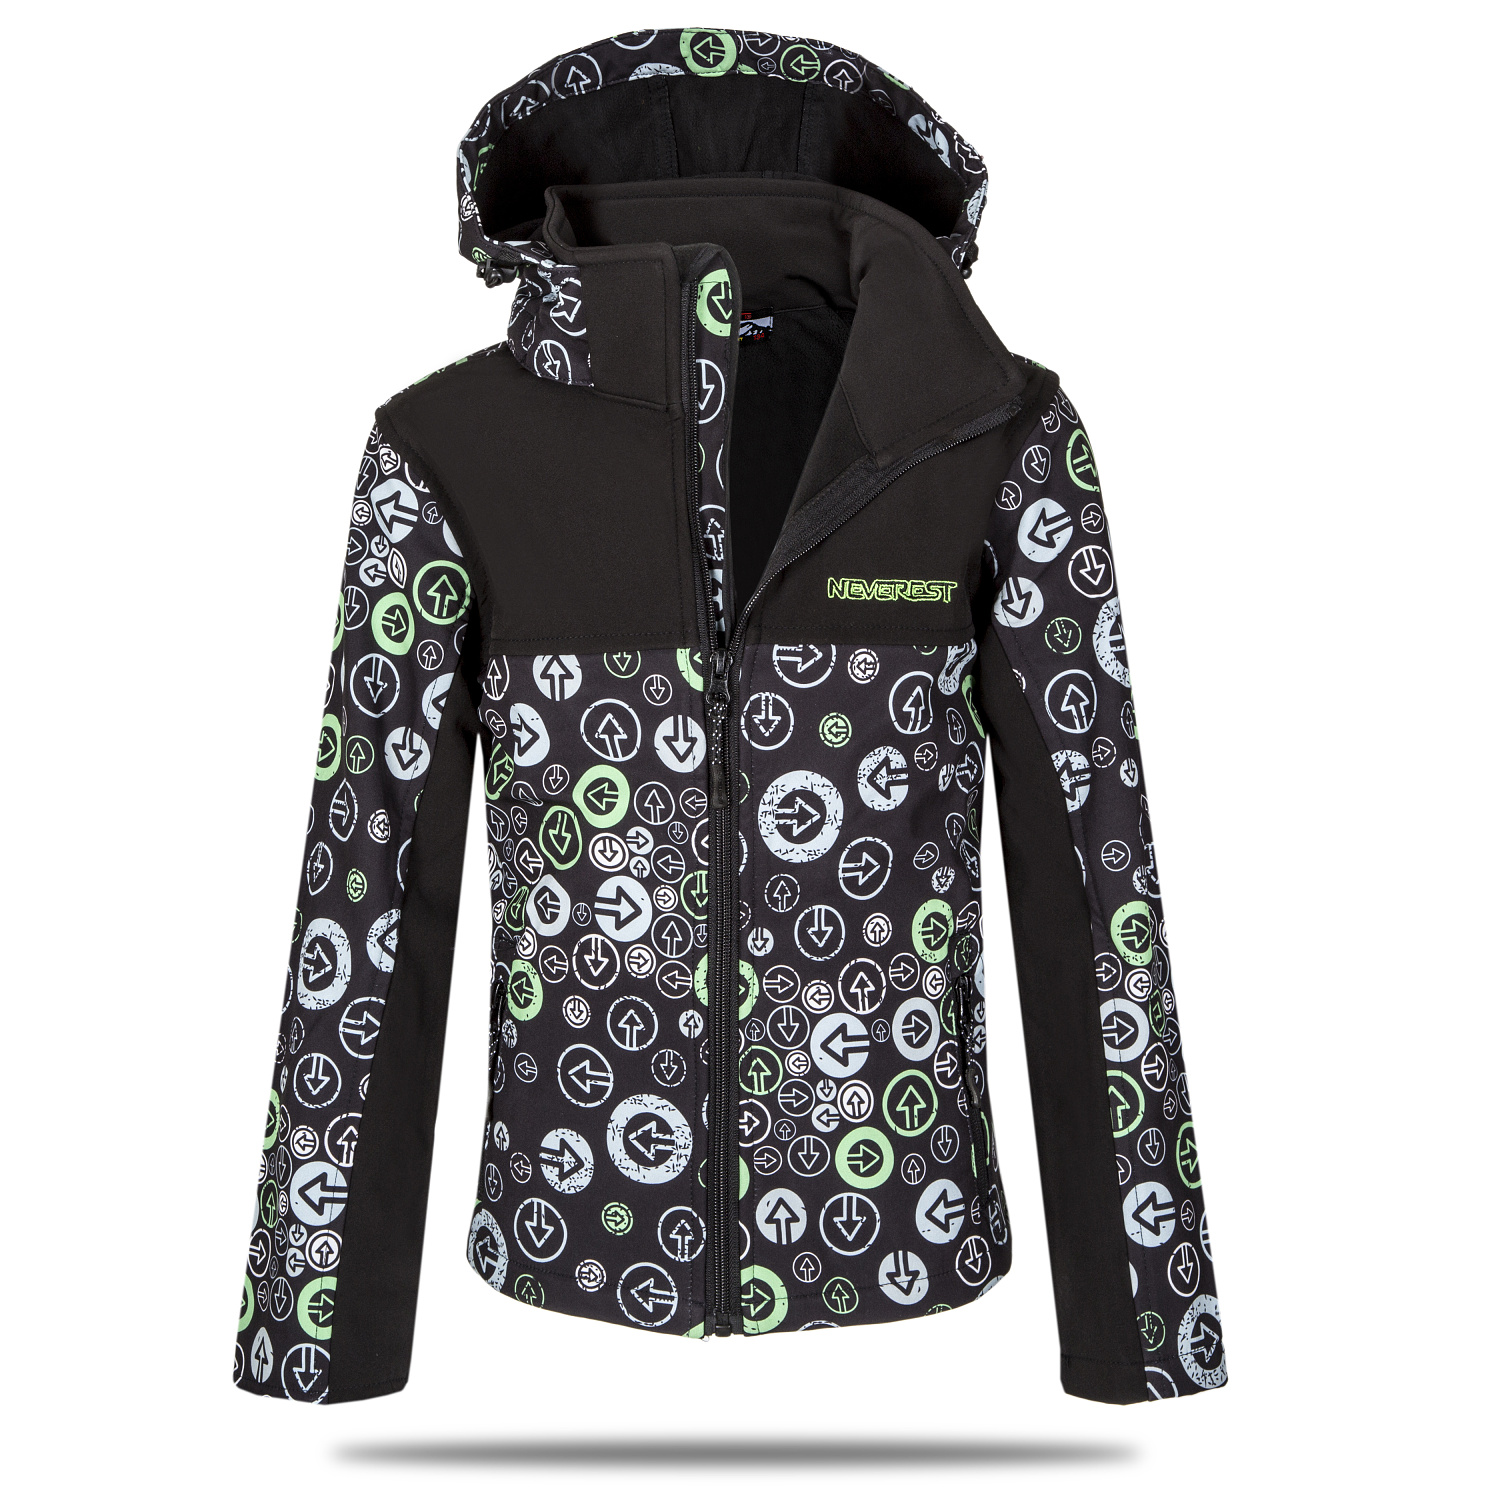 Chlapecká softshellová bunda - NEVEREST I-6296cc, černo-zelená Barva: Černá, Velikost: 92